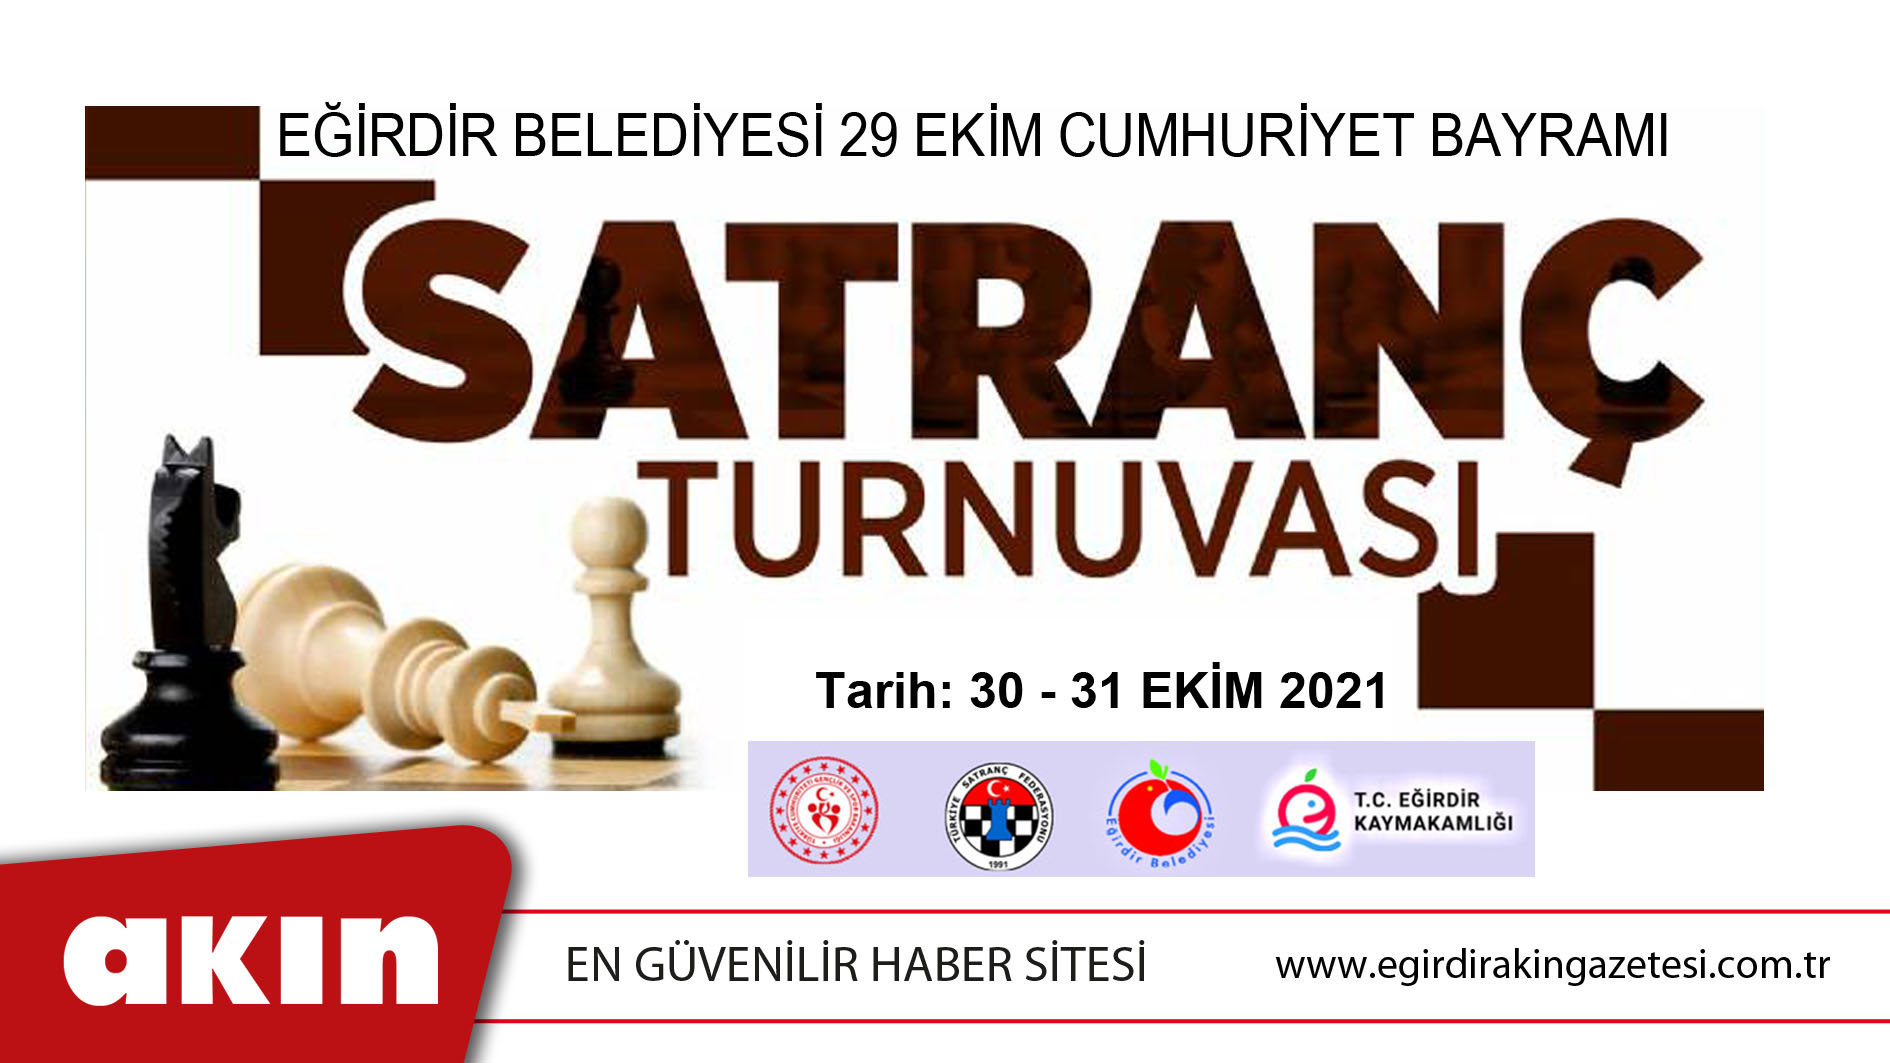 eğirdir haber,akın gazetesi,egirdir haberler,son dakika,Eğirdir Belediyesi 29 Ekim Cumhuriyet Bayramı Satranç Turnuvası